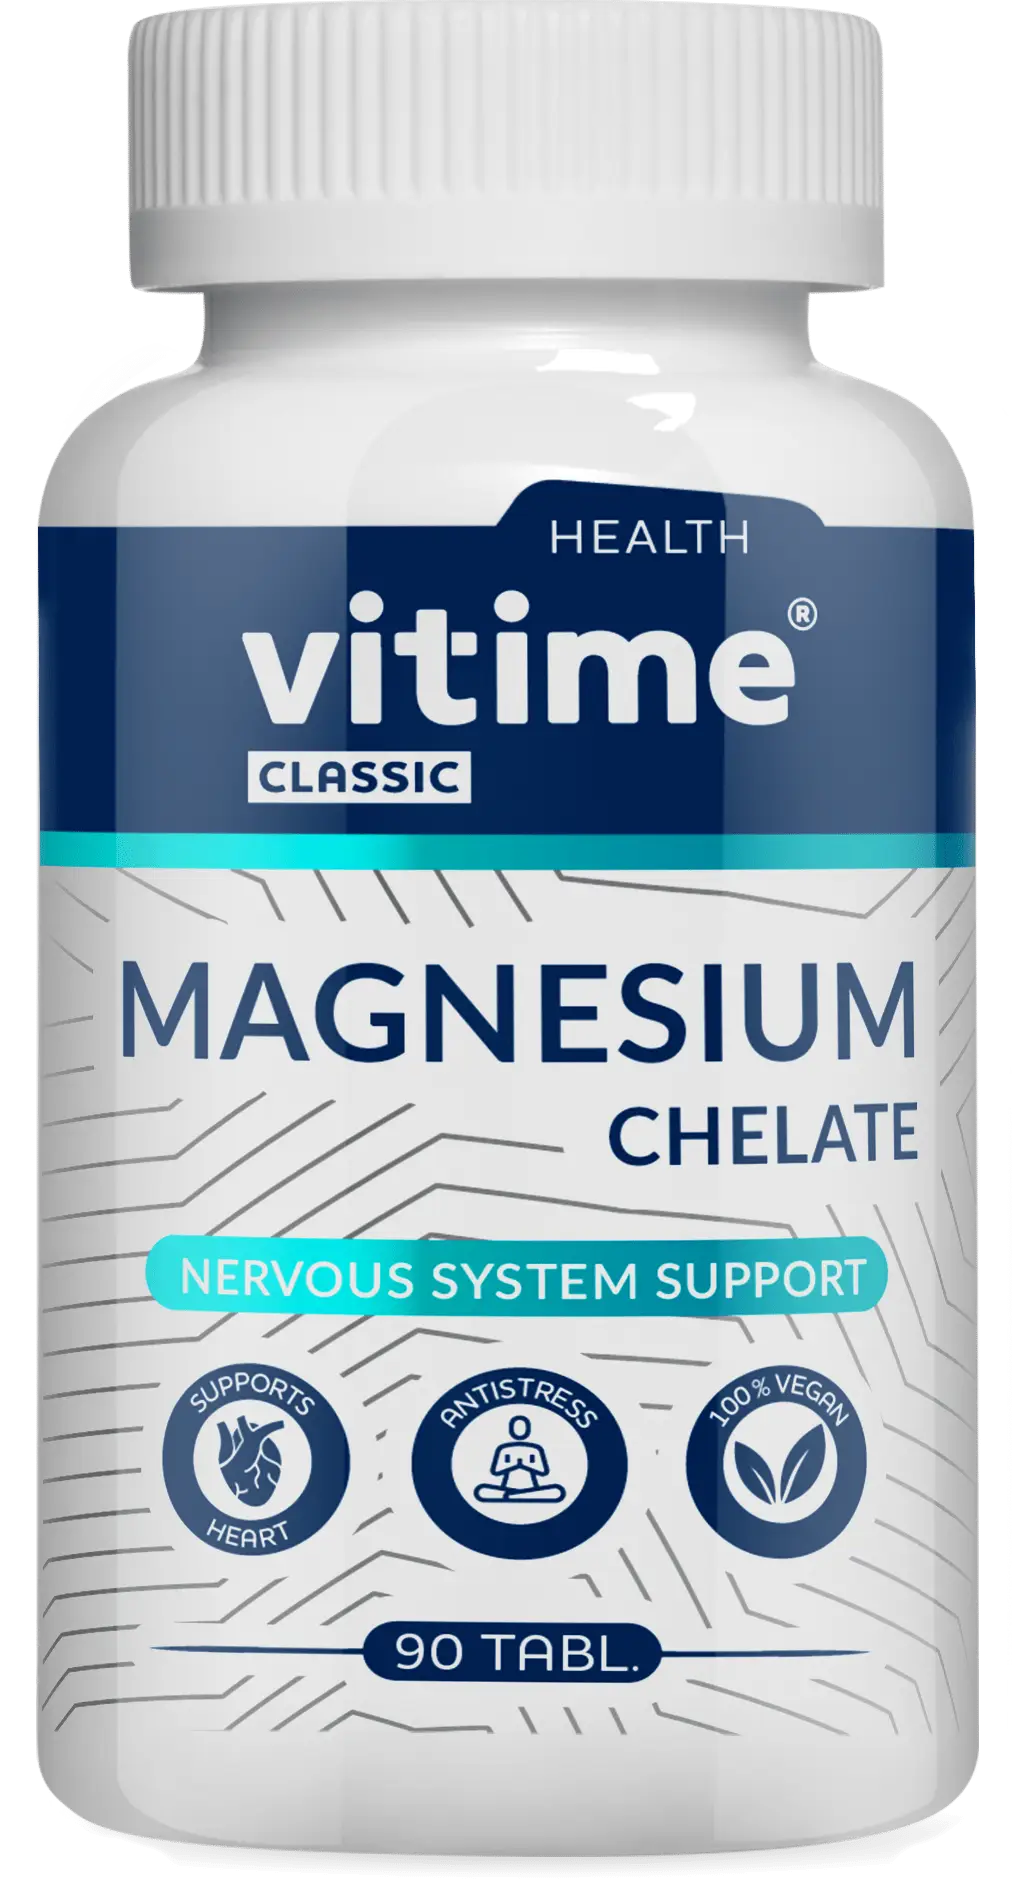 VITime® Classic Magnesium Chelate